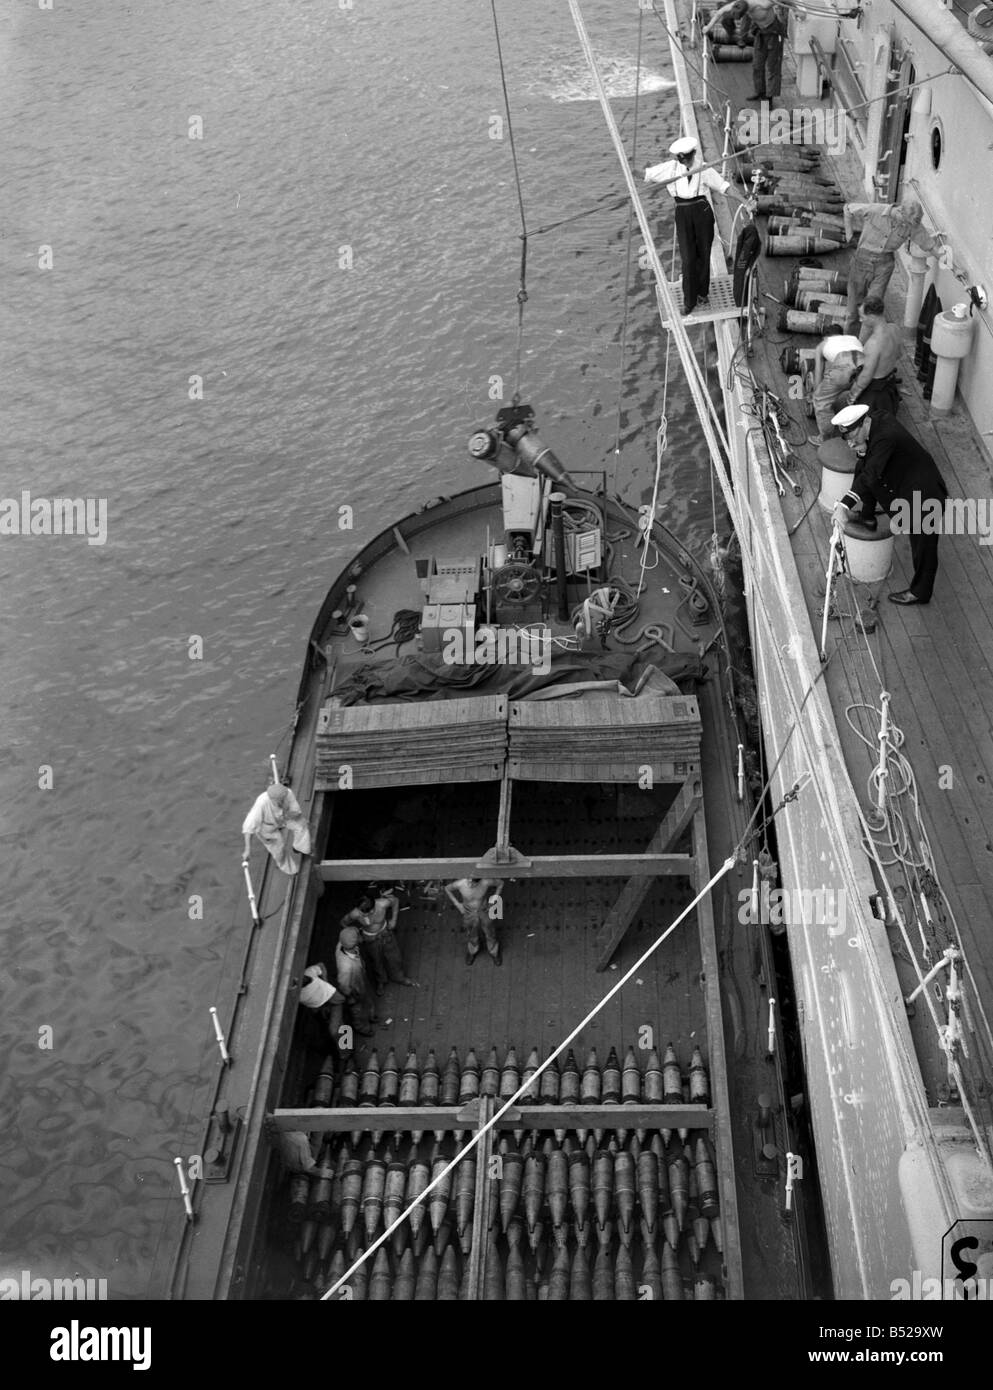 L'équipage de la classe de croiseur HMS London en tenant compte des fournitures et des munitions d'une barge après qu'elle ait été endommagée Banque D'Images